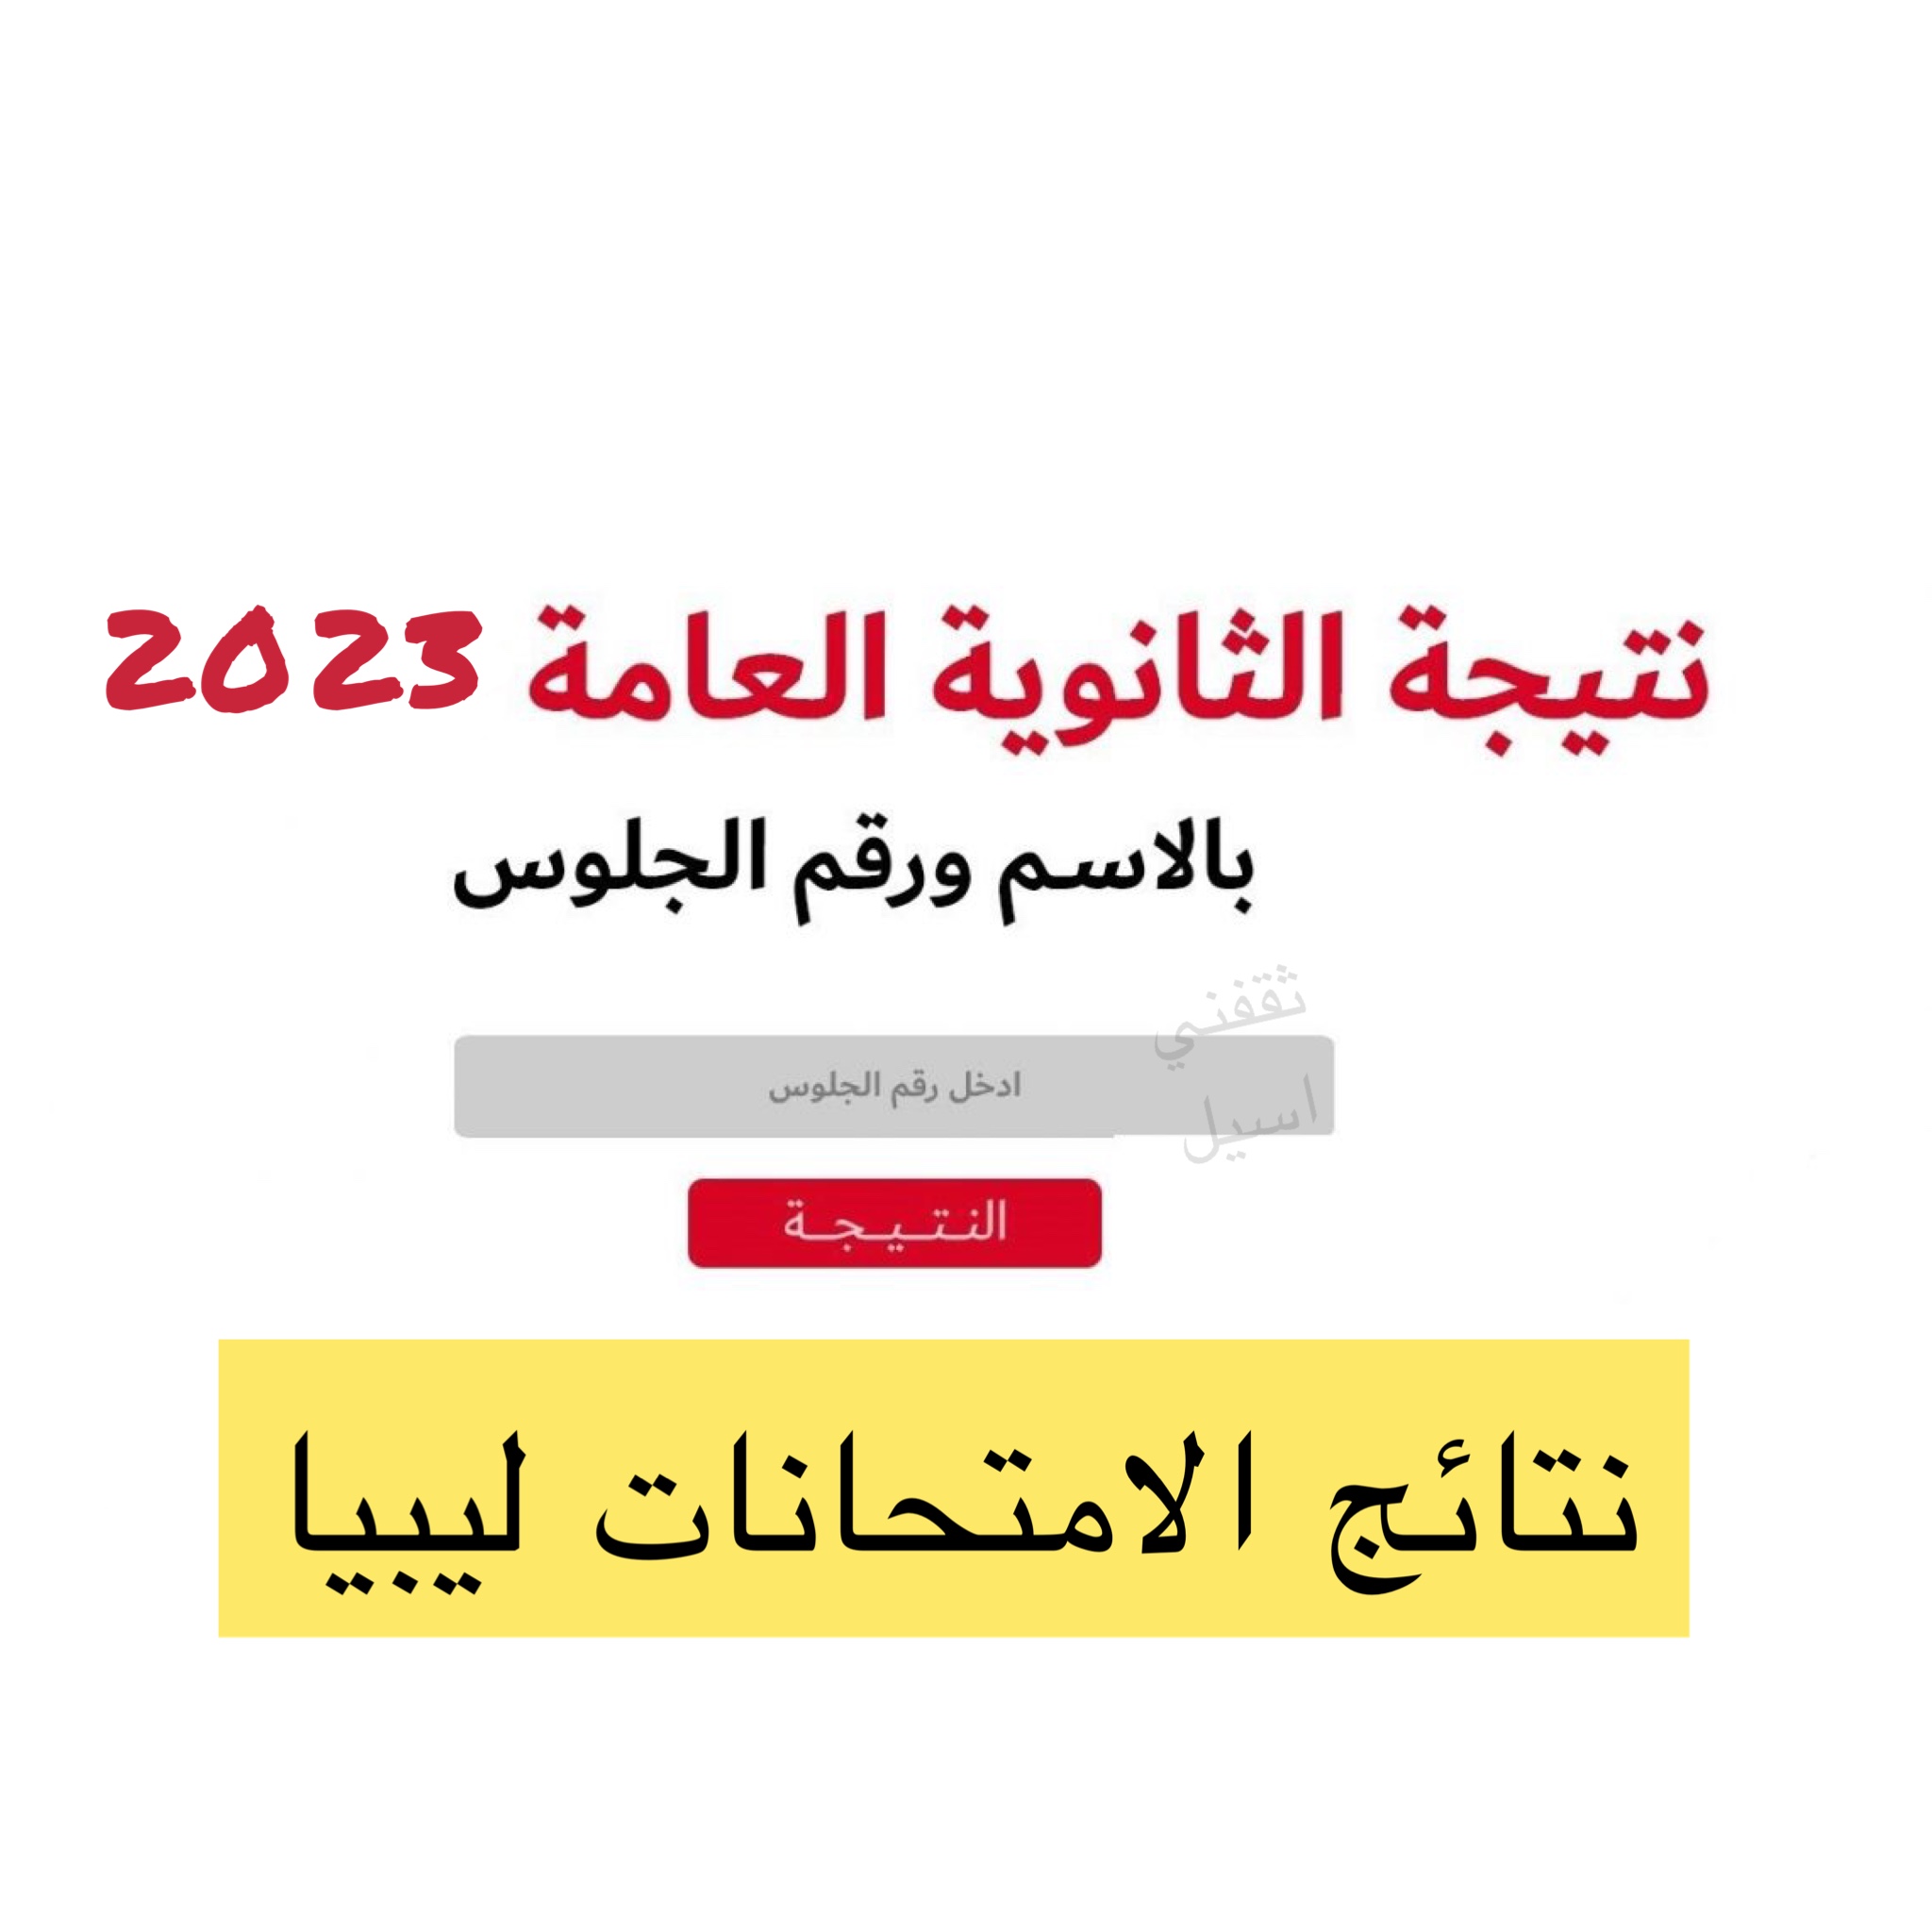 نتيجة الثانوية العامة ليبيا 2023 برقم الجلوس علمي وأدبي وديني عبر وزارة التربية والتعليم الرسمي moe.gov.ly